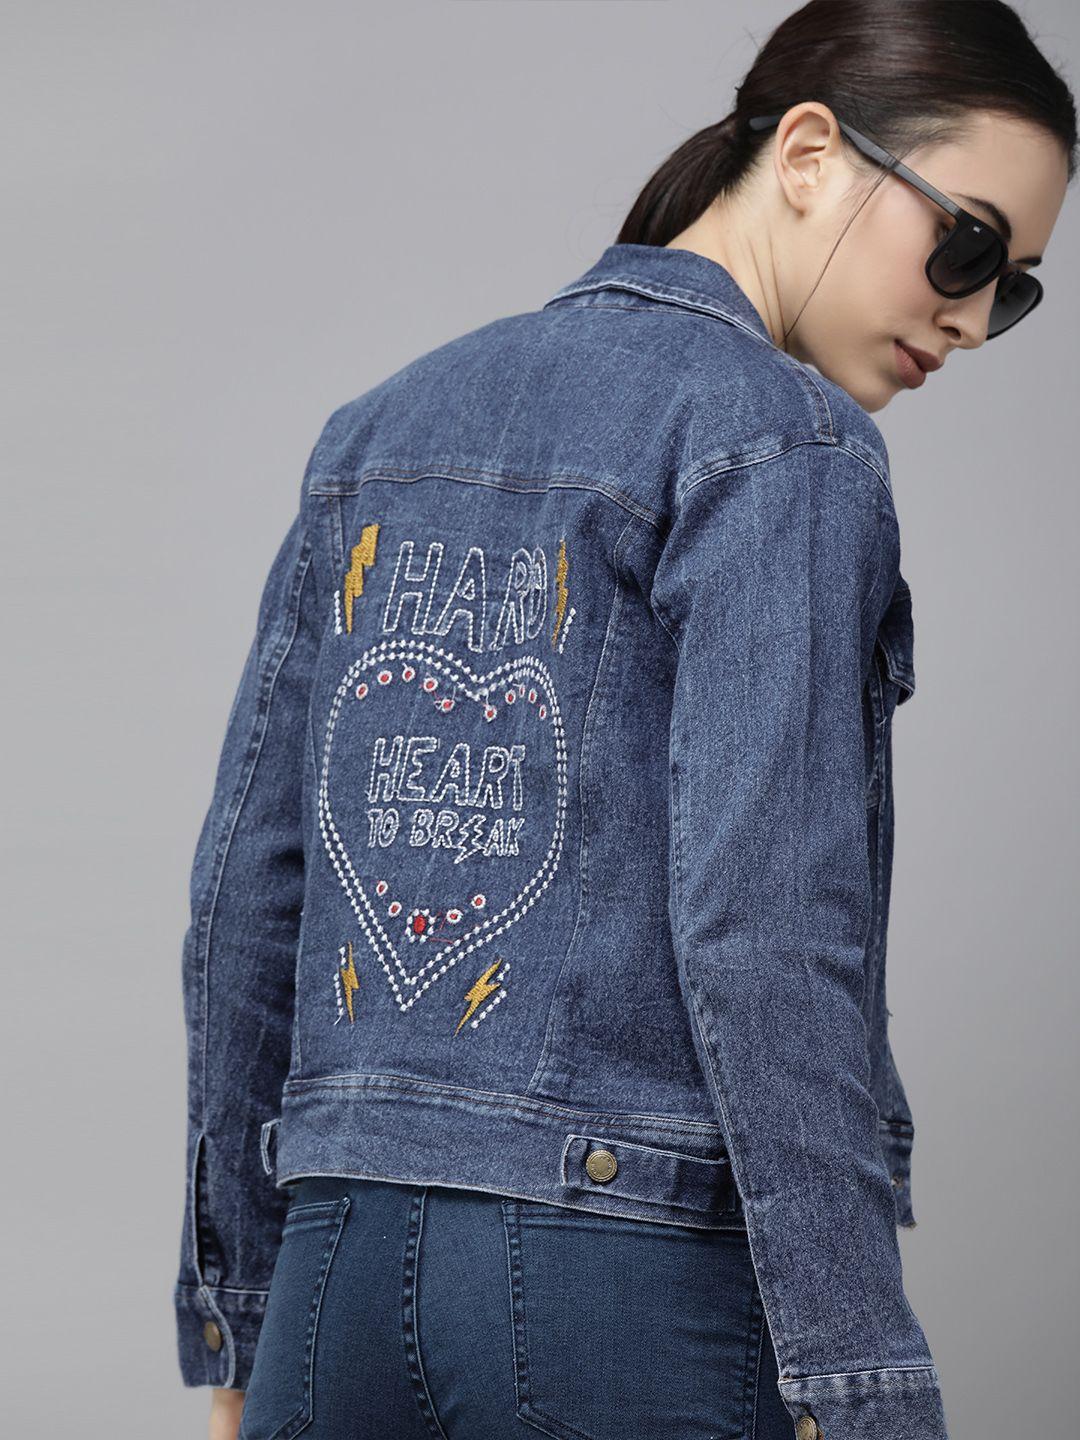 voxati women blue typography embroidered denim jacket